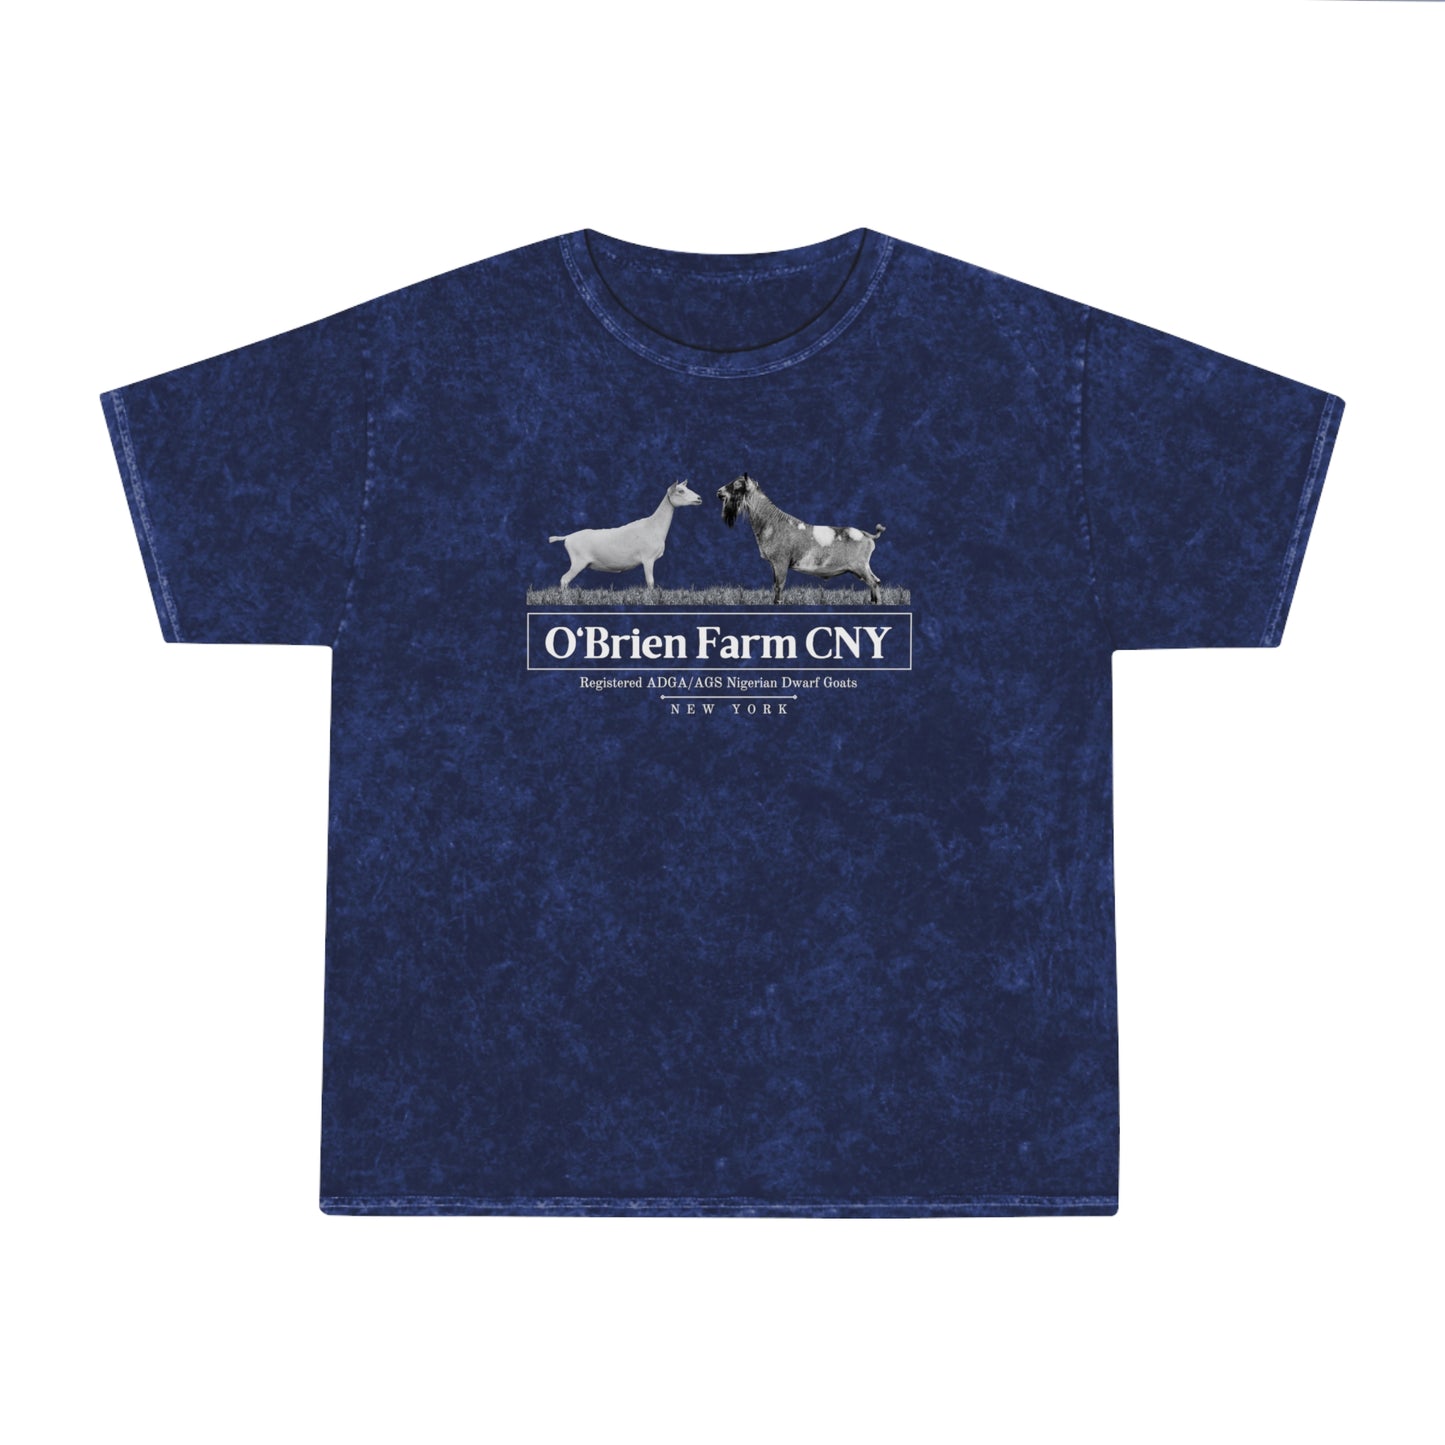 ** Unisex ** Mineral Wash T-Shirt "O'Brien Farm CNY"